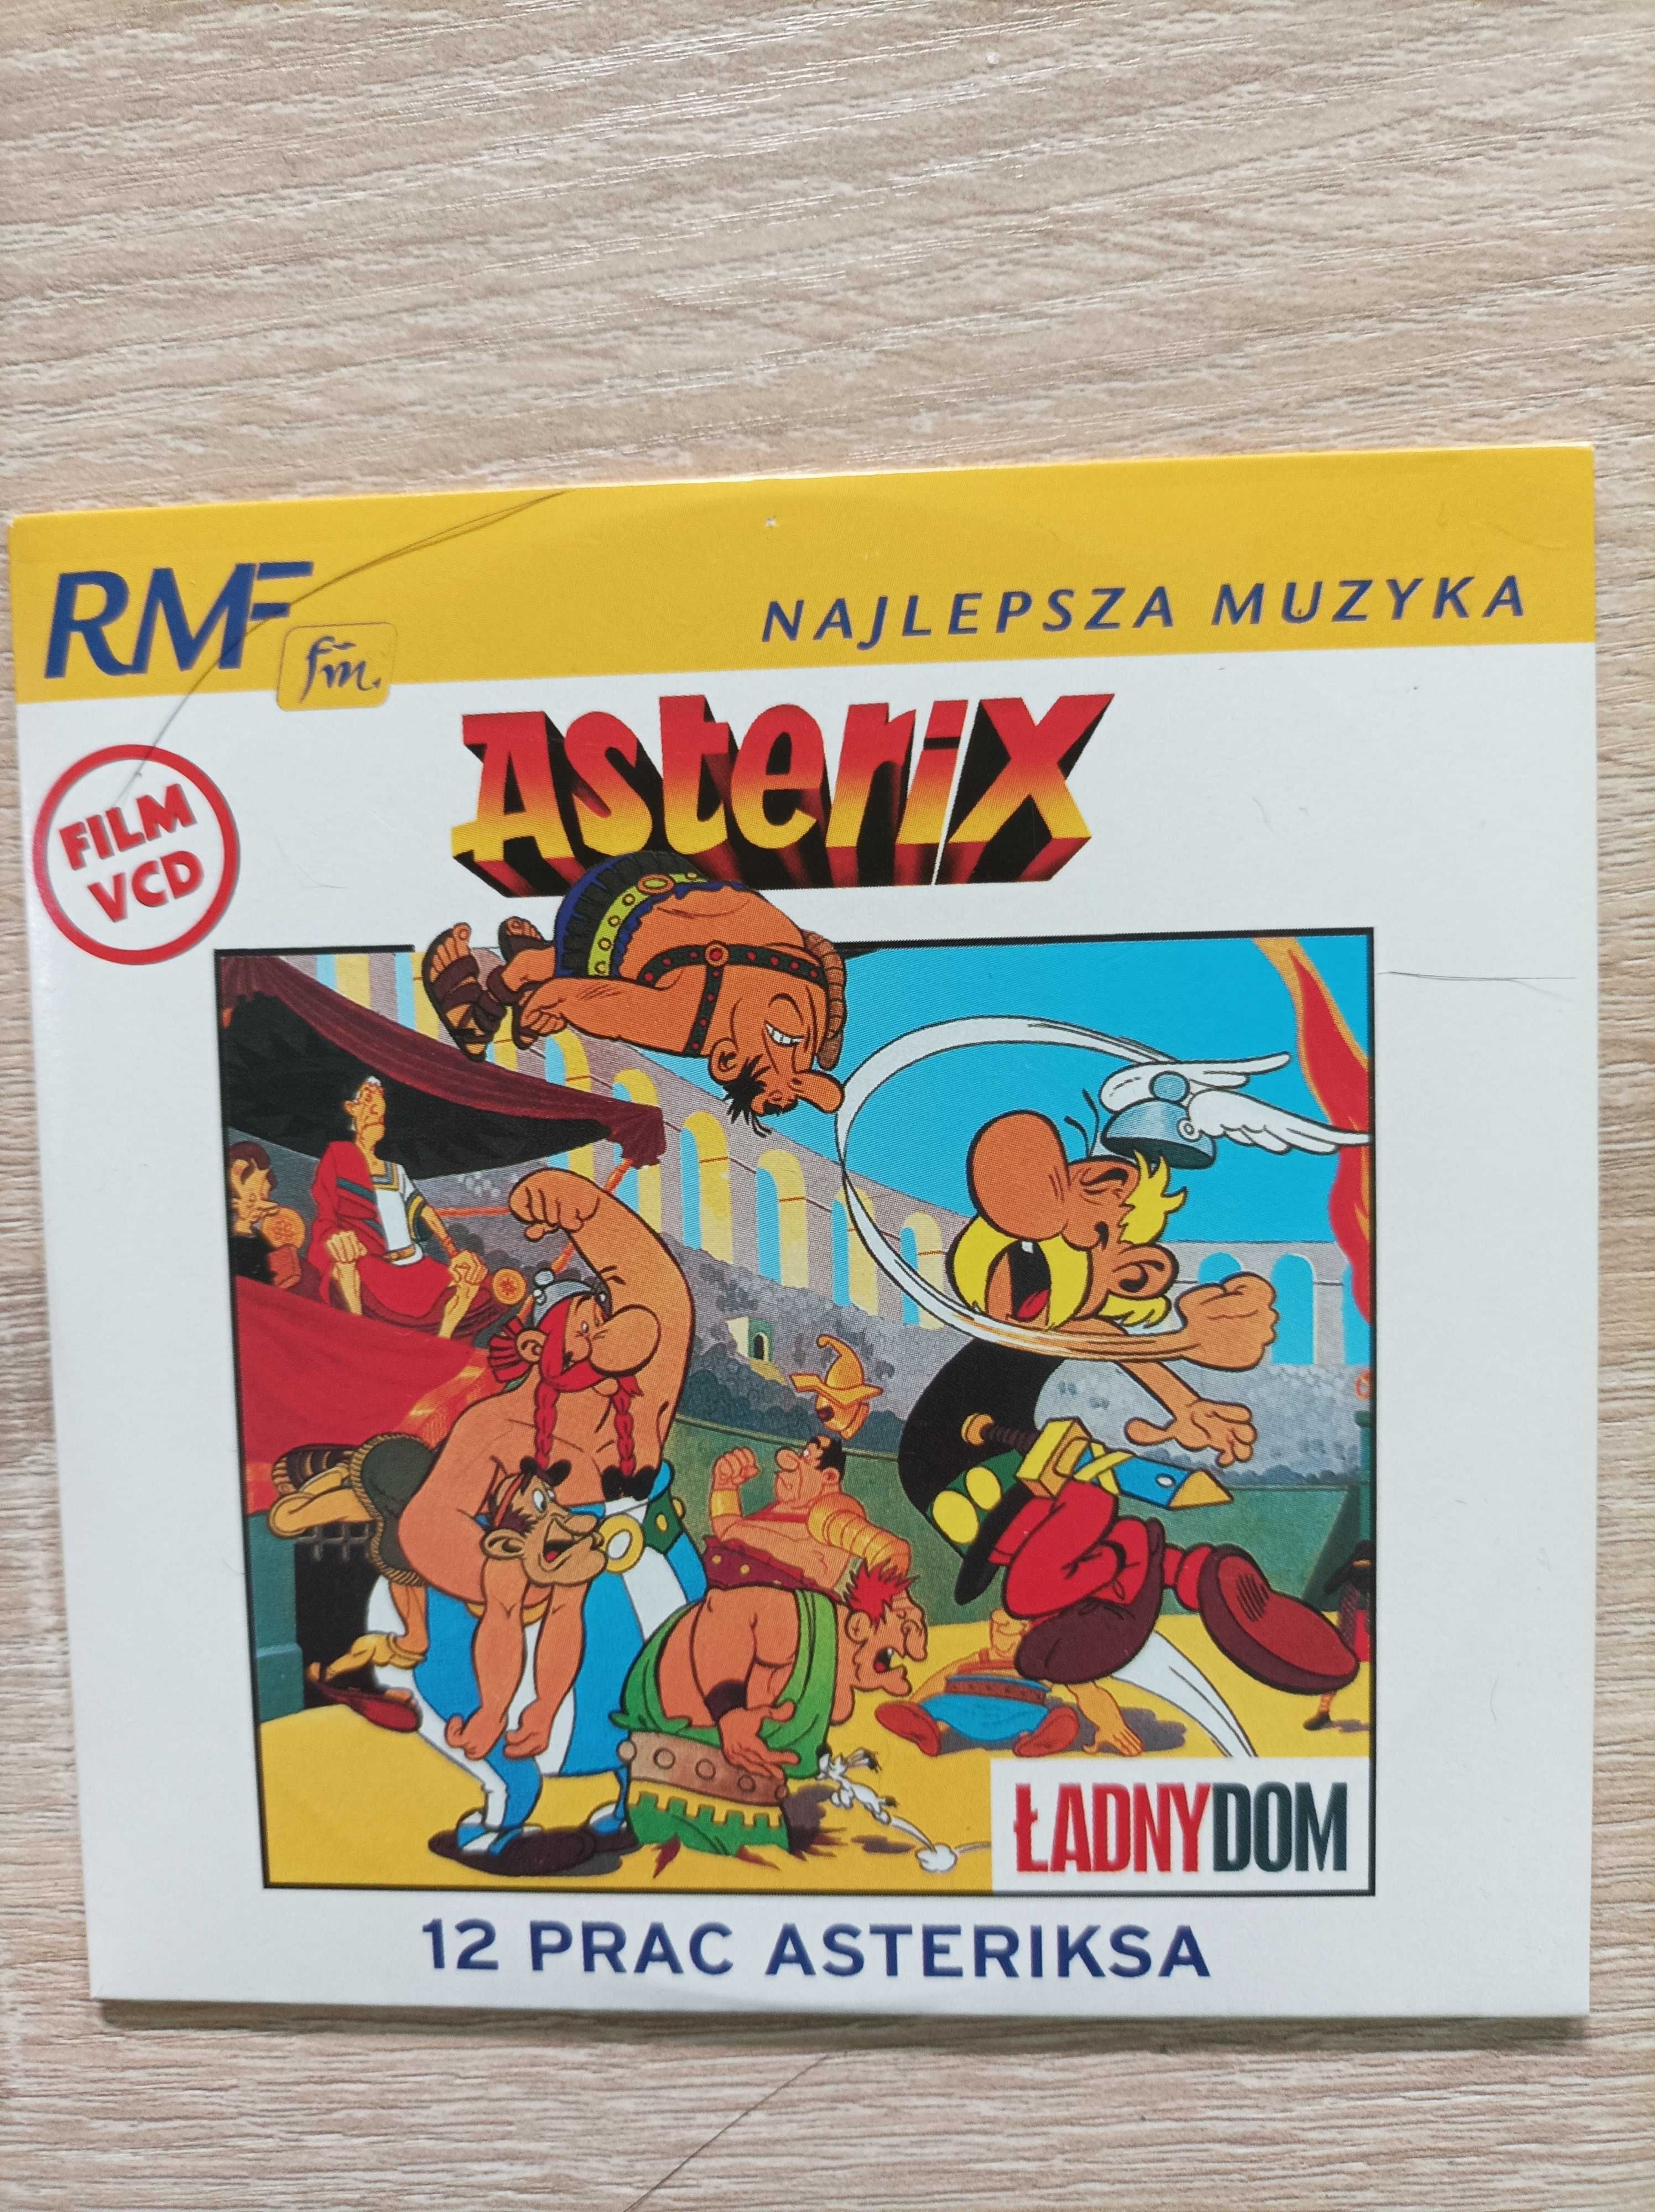 Film VCD Asterix